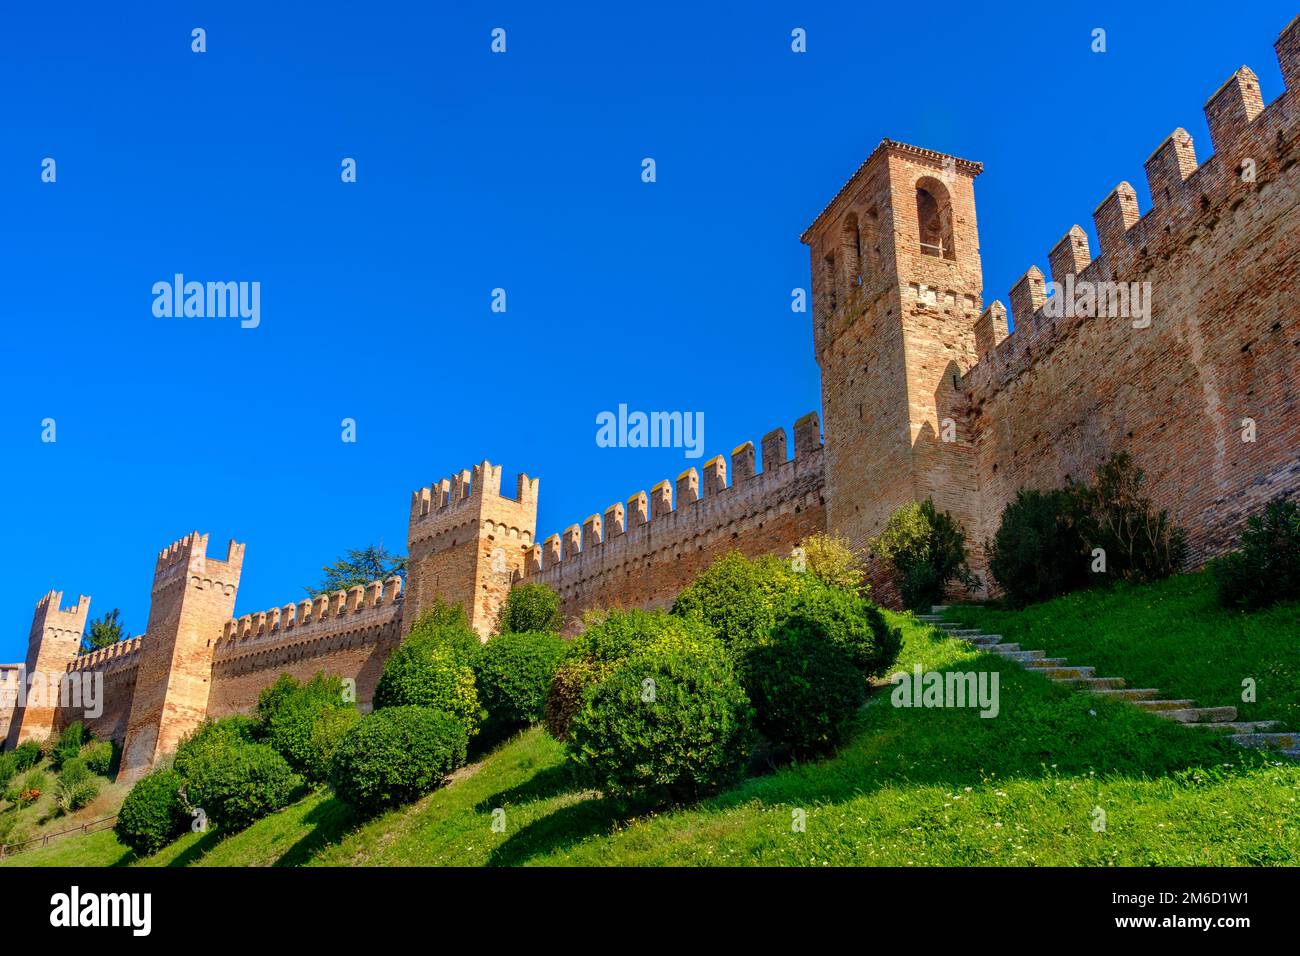 Les murs du château arrière-plan copyspace - Gradara - Pesaro - Italie Banque D'Images